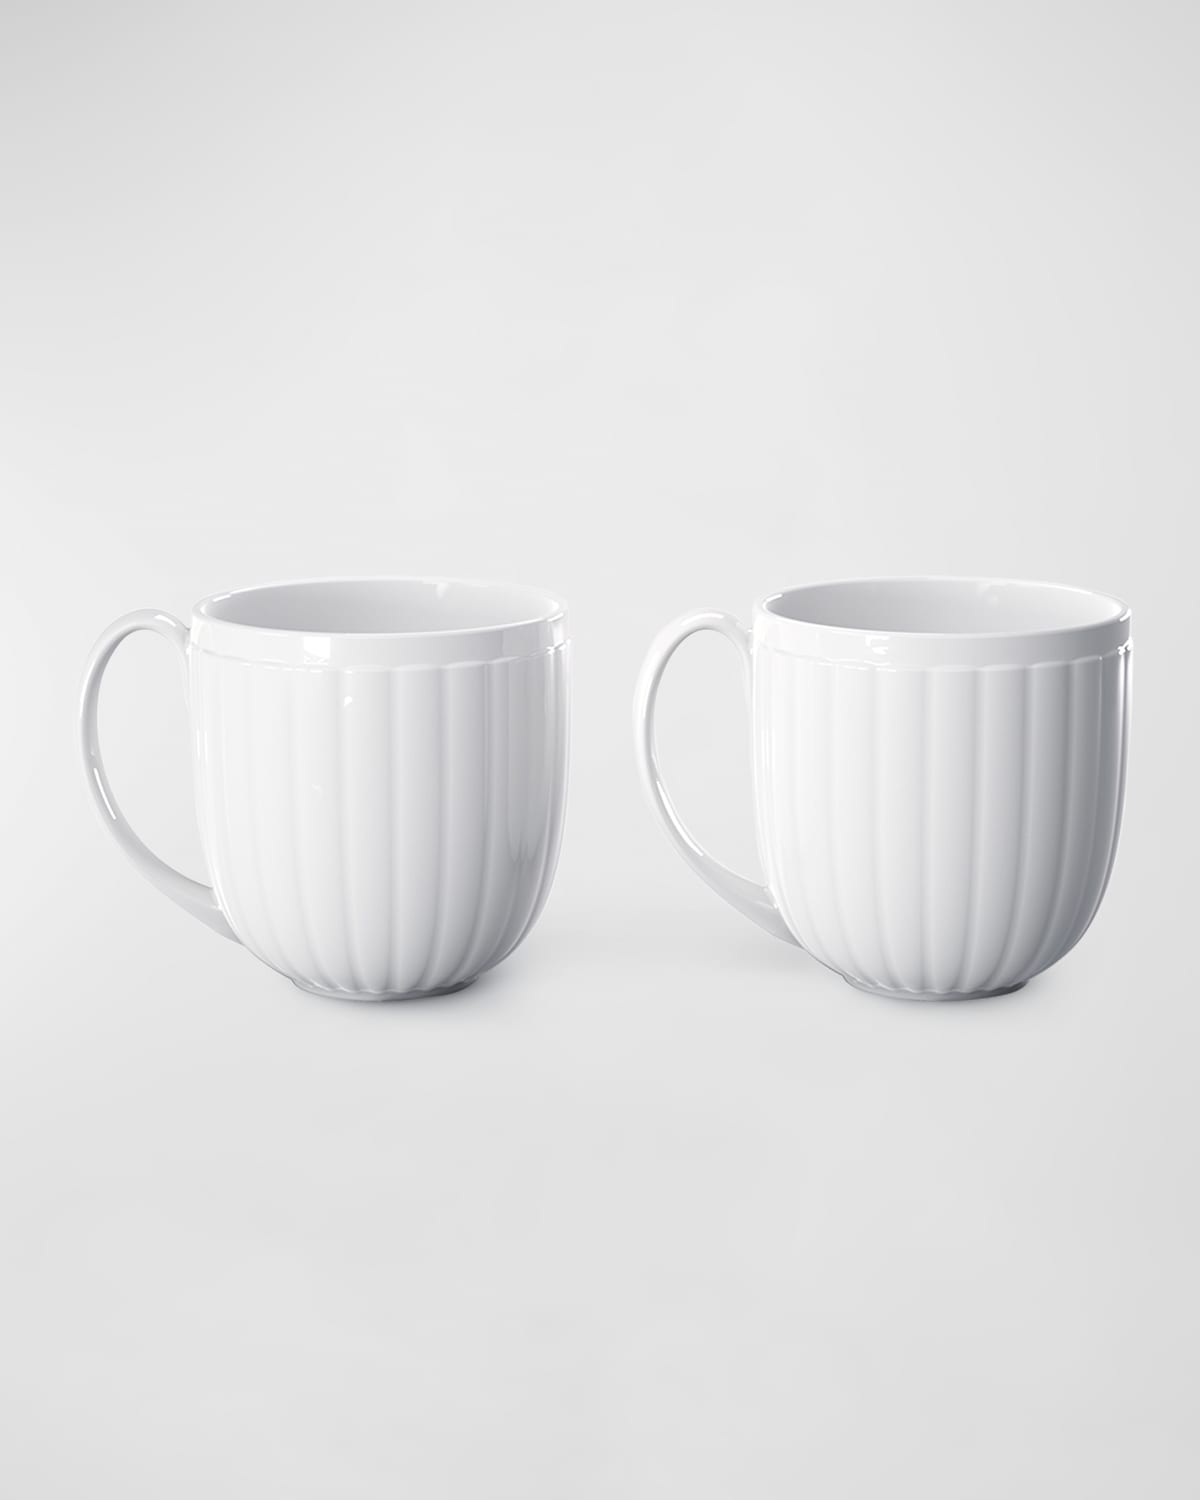 Georg Jensen Bernadotte 2-piece Porcelain Cups Set